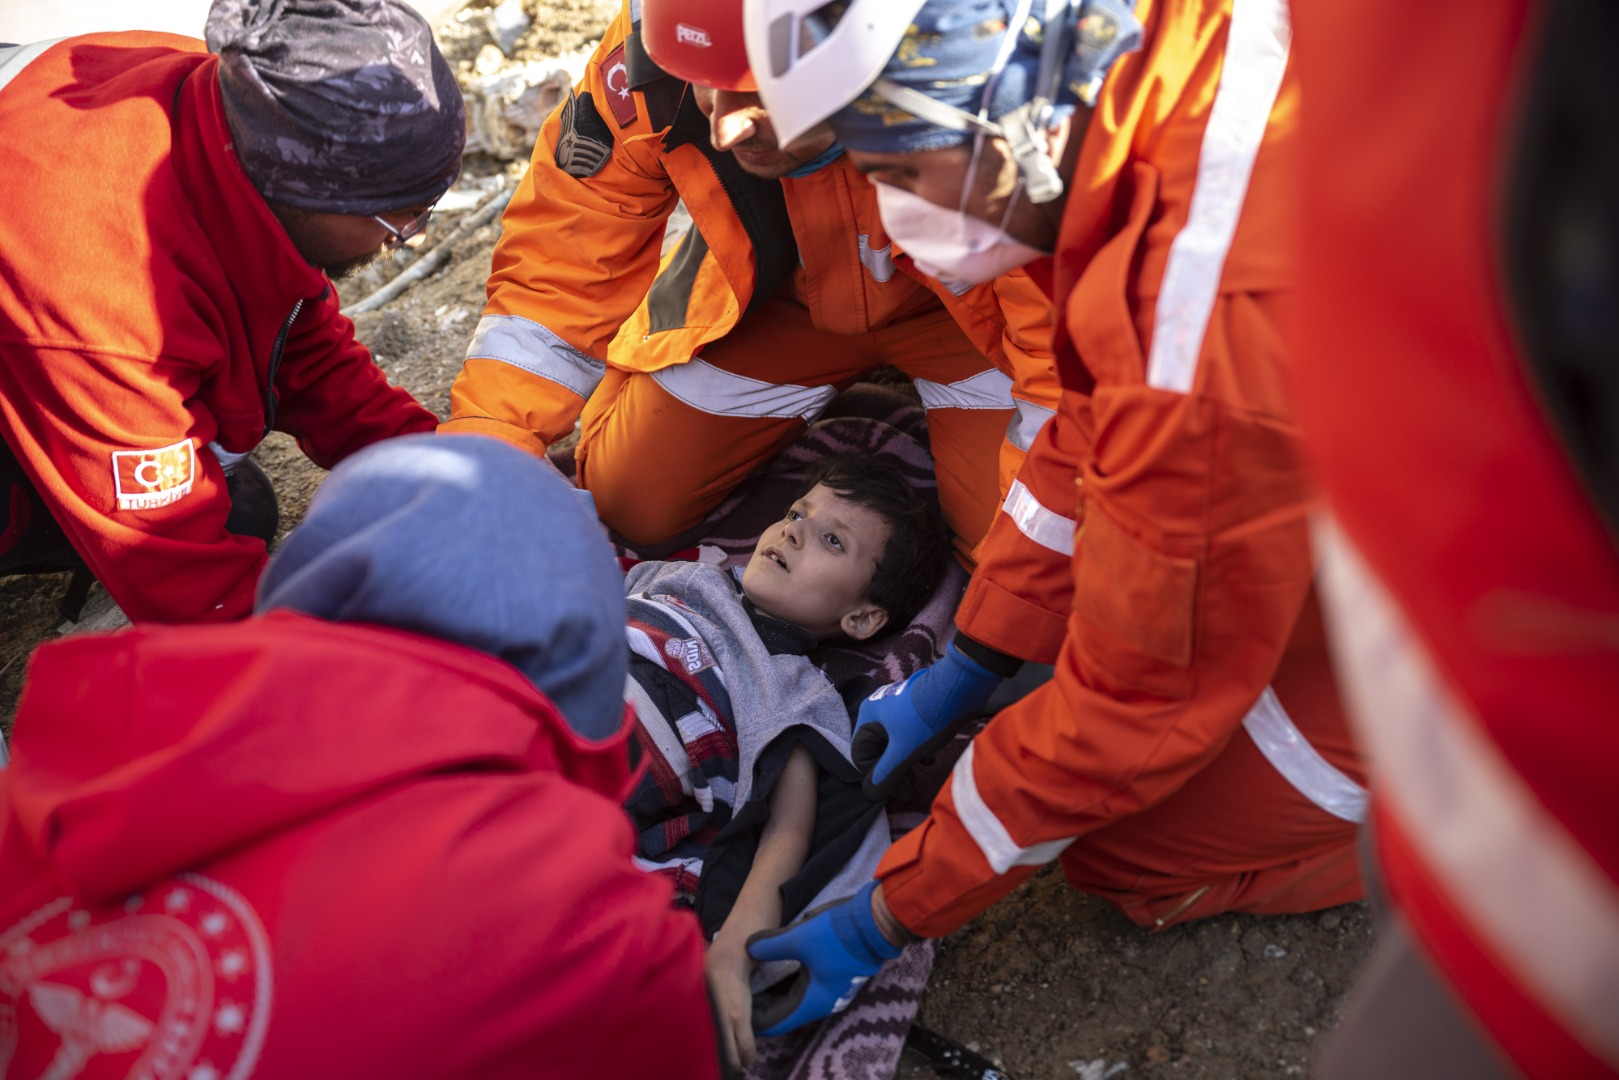 Depremzede vatandaş: Çocuklara sakinleşsinler diye ilaç veriyoruz 18